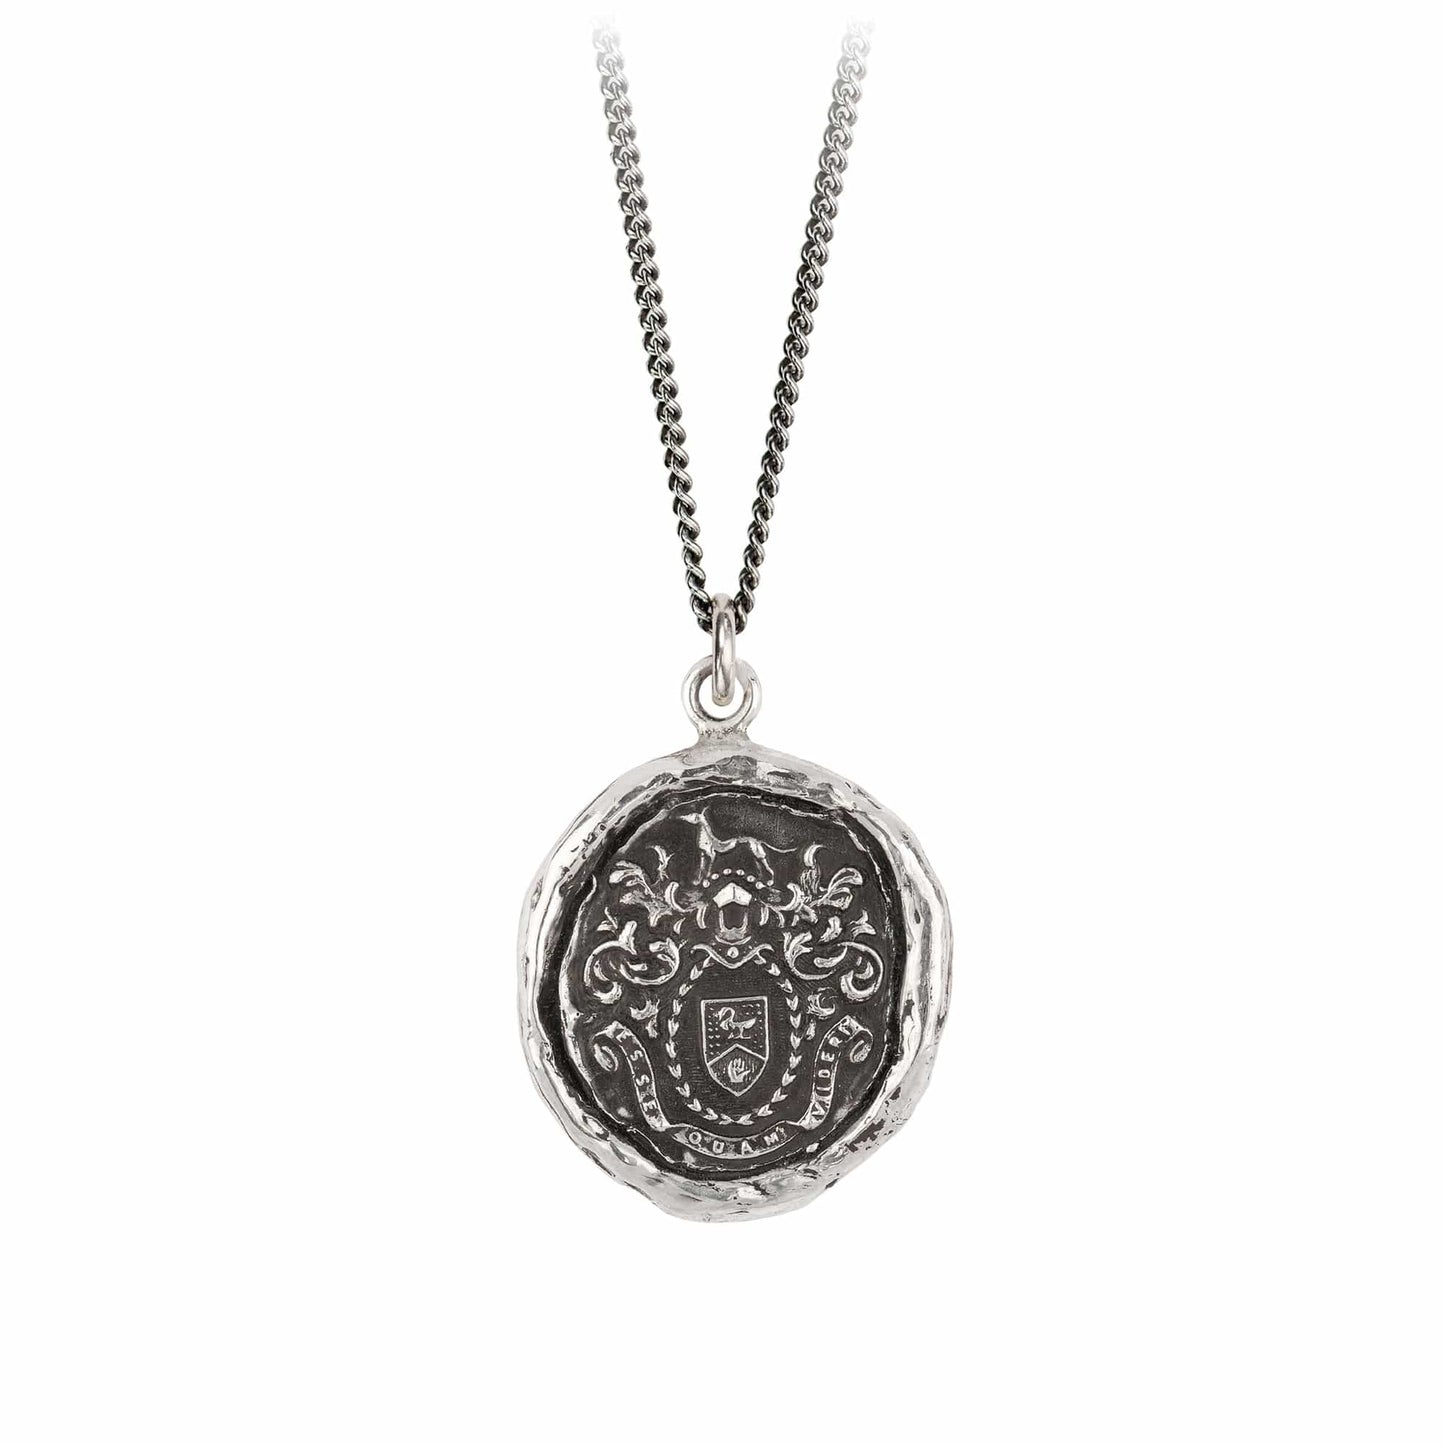 NKL Authentic Talisman Necklace